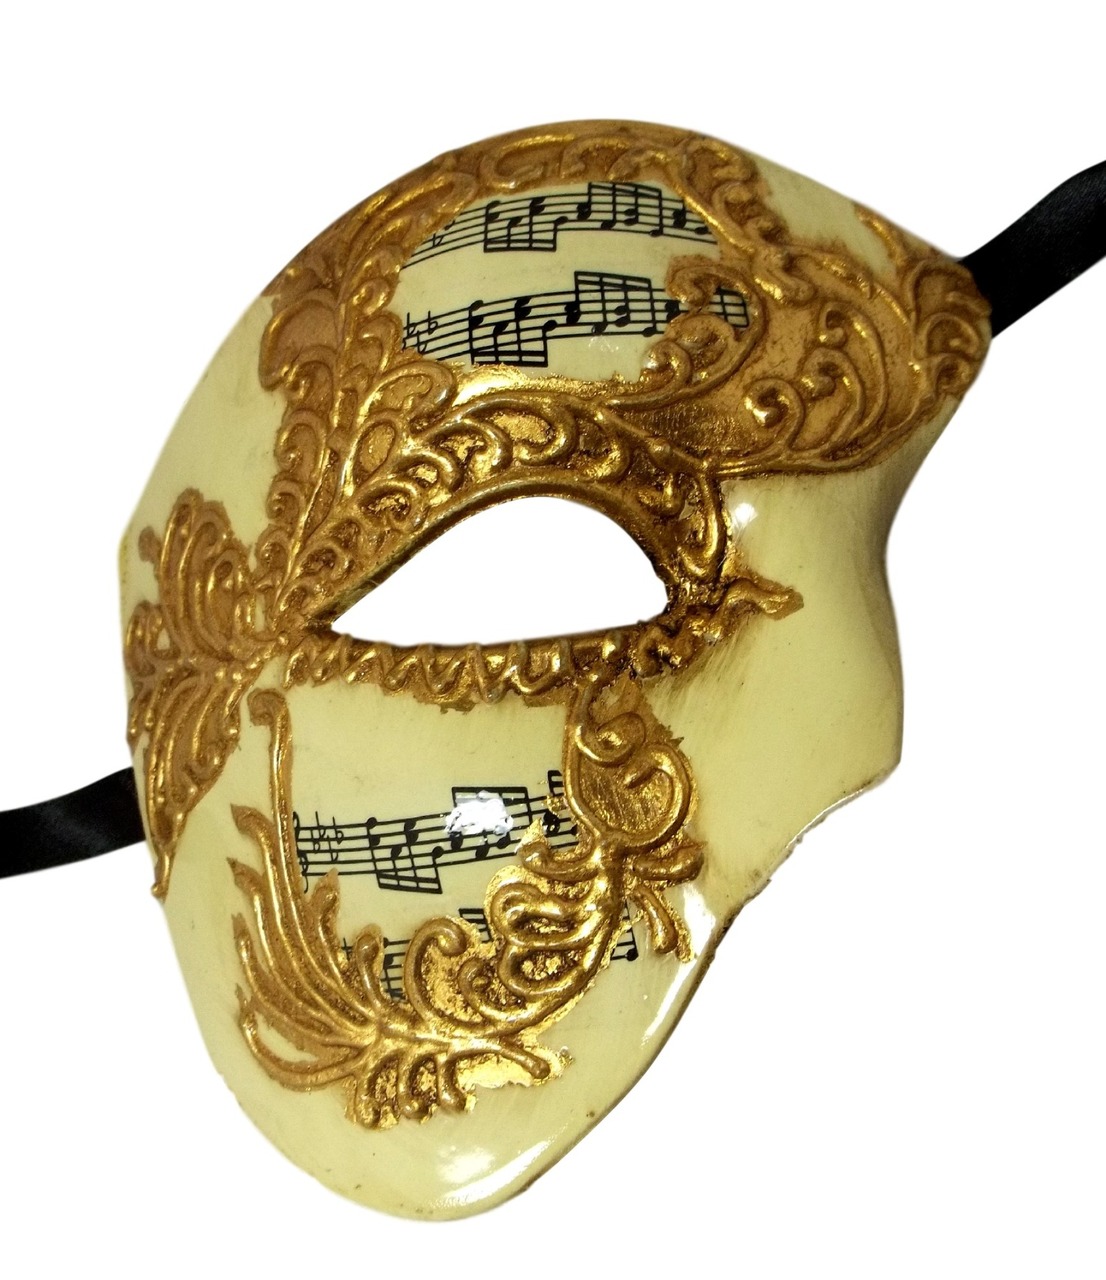 phantom of the opera mask accurate